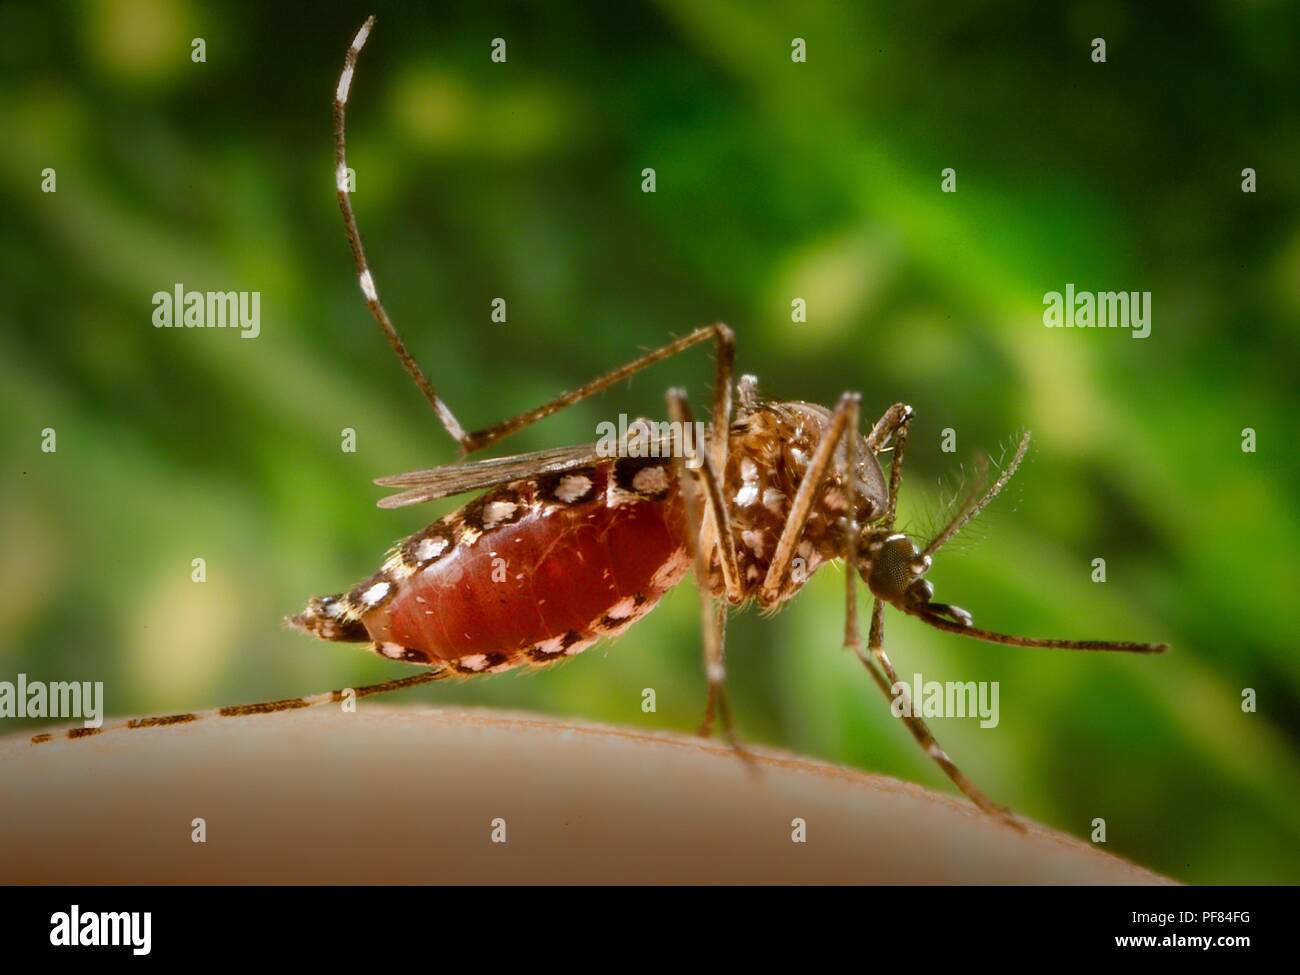 Femmine Aedes aegypti mosquito, congestioni con sangue, battenti dal suo ospite umano, 2006. Immagine cortesia di centri per il controllo delle malattie (CDC) / James Gathany. () Foto Stock